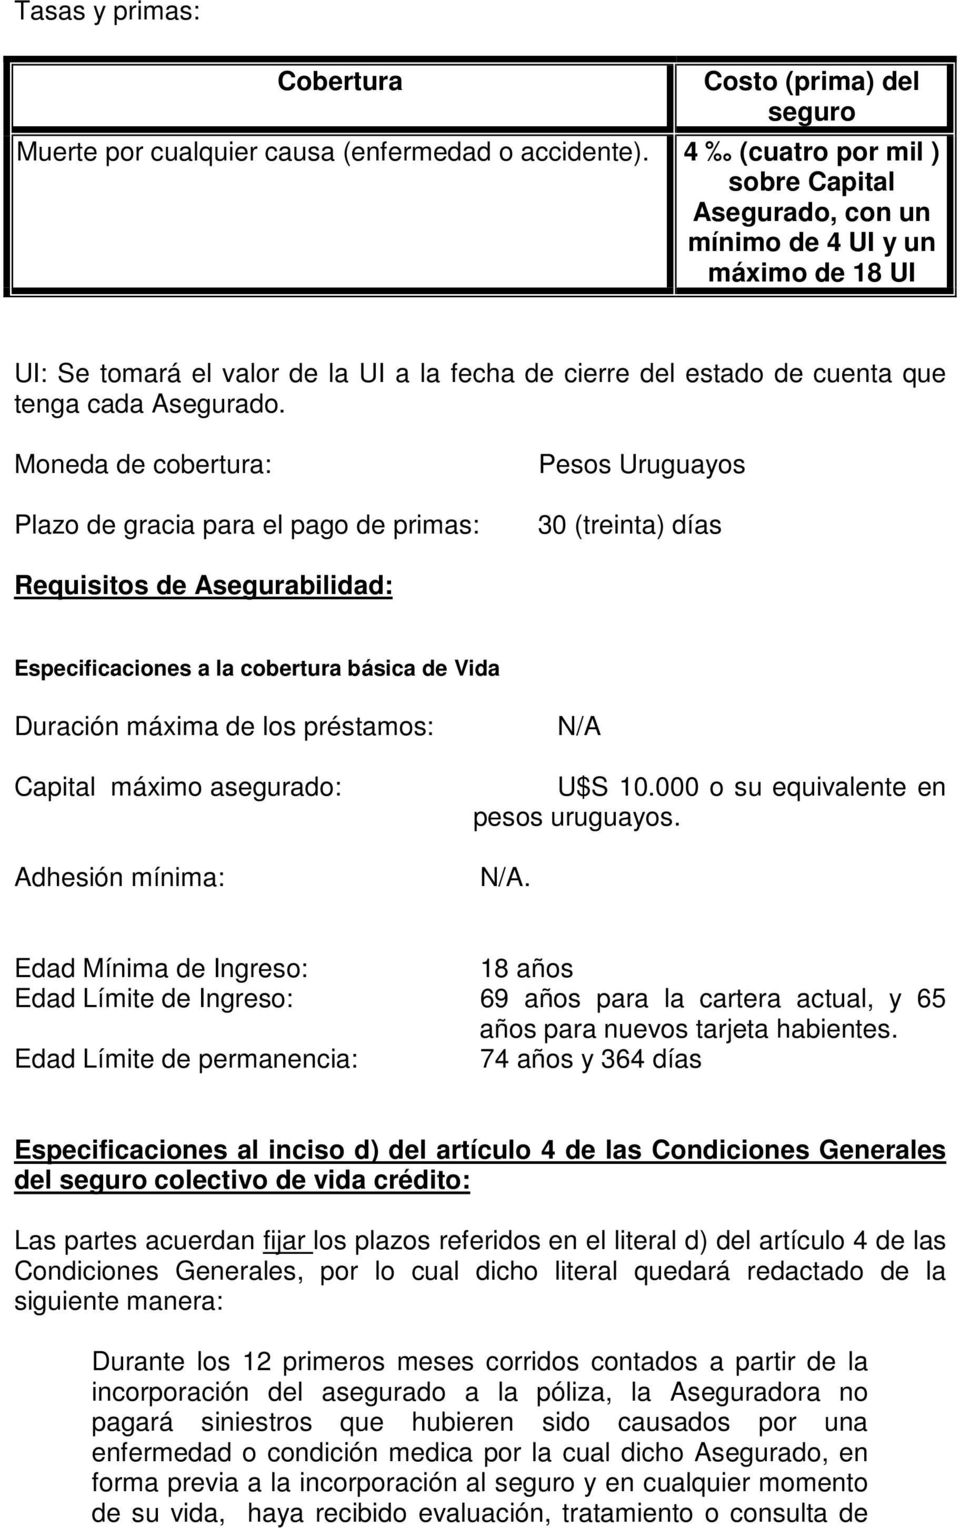 Moneda de cobertura: Plazo de gracia para el pago de primas: Pesos Uruguayos 30 (treinta) días Requisitos de Asegurabilidad: Especificaciones a la cobertura básica de Vida Duración máxima de los